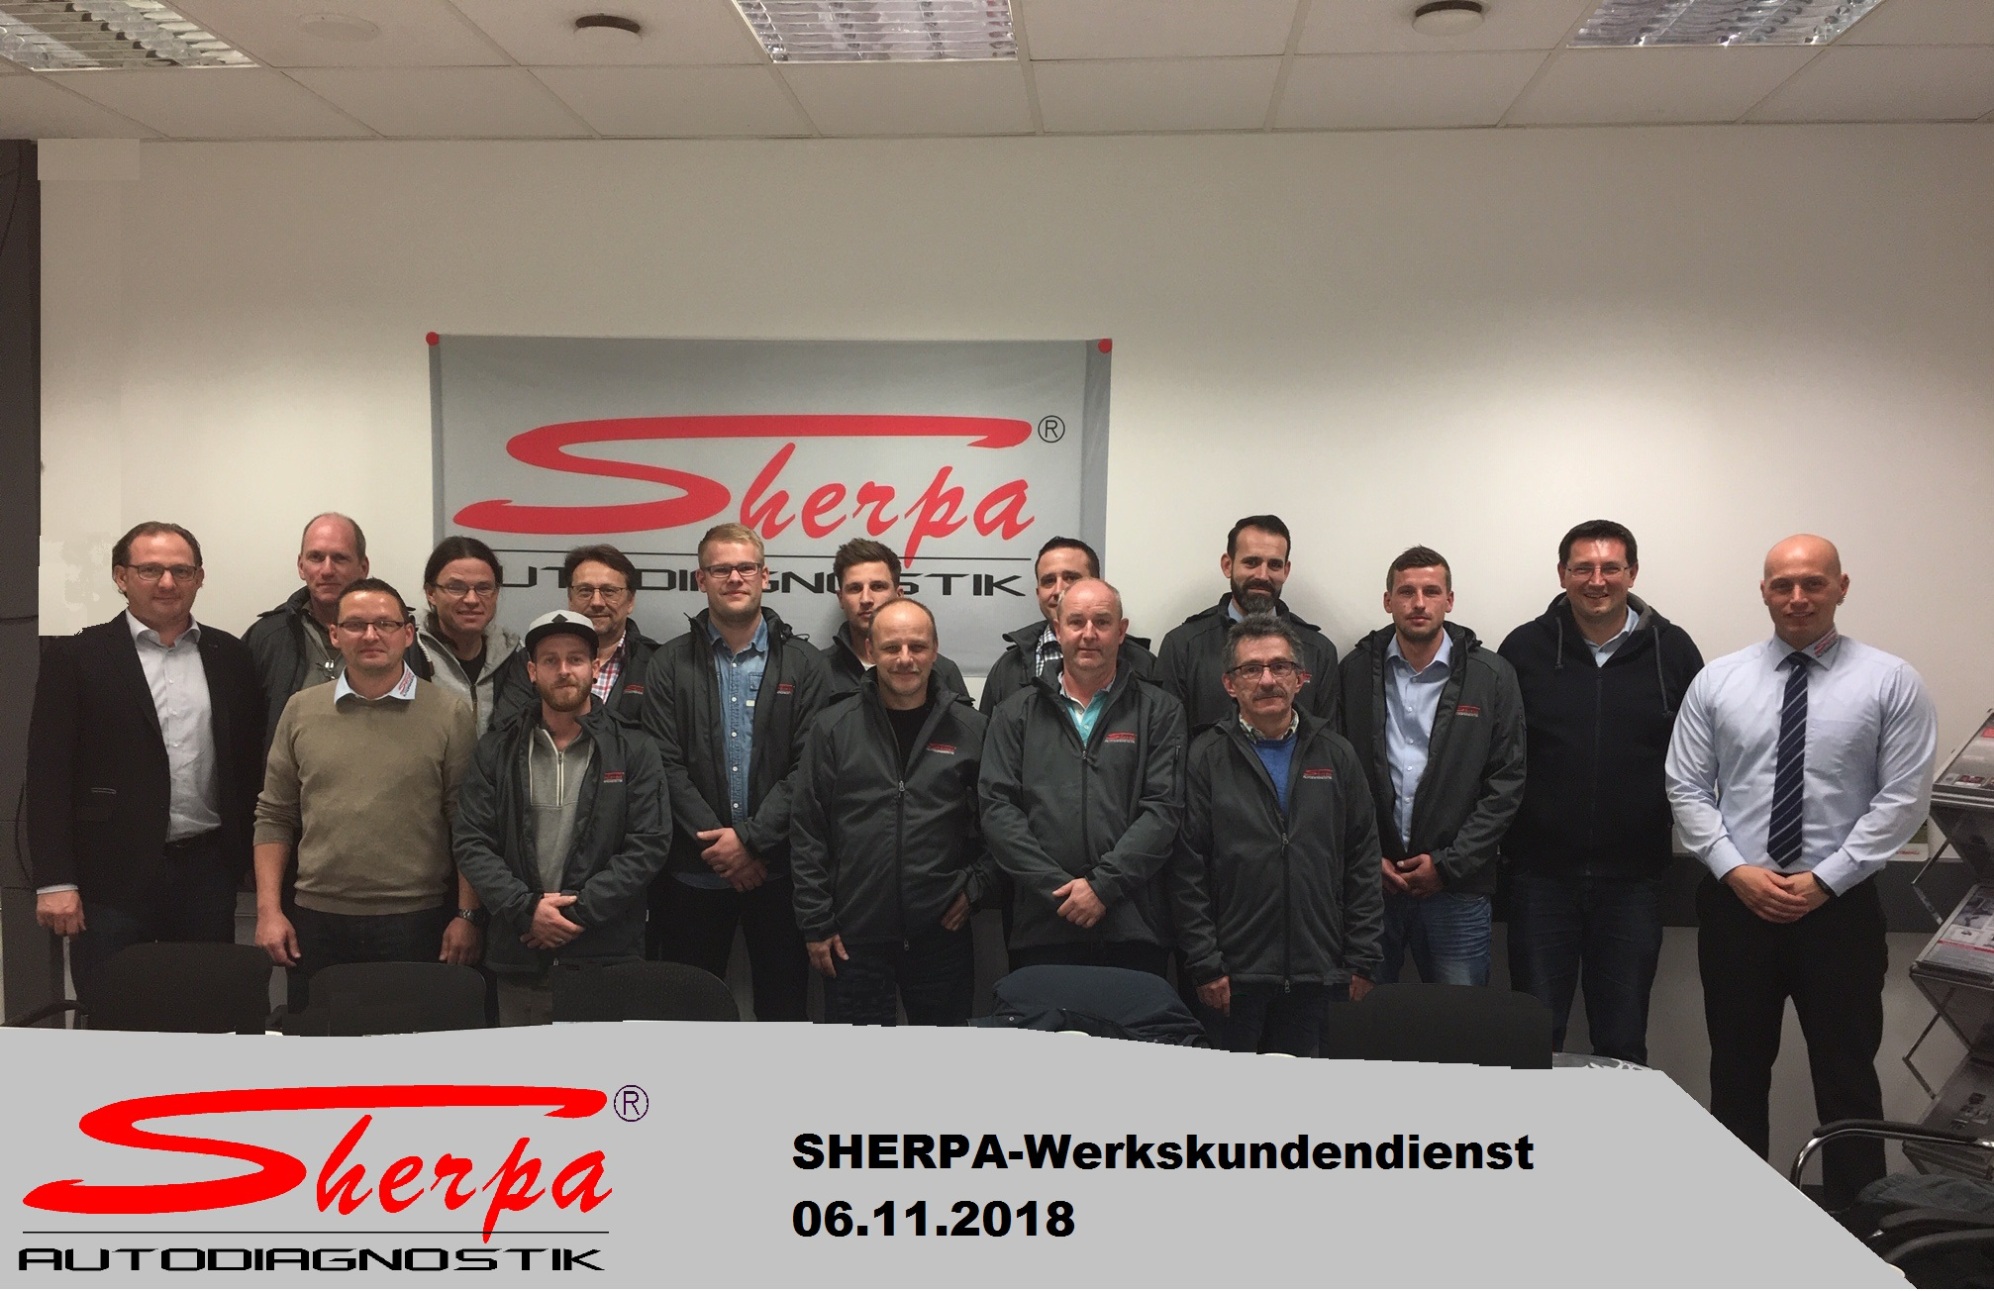 SHERPA Werkskundendienst